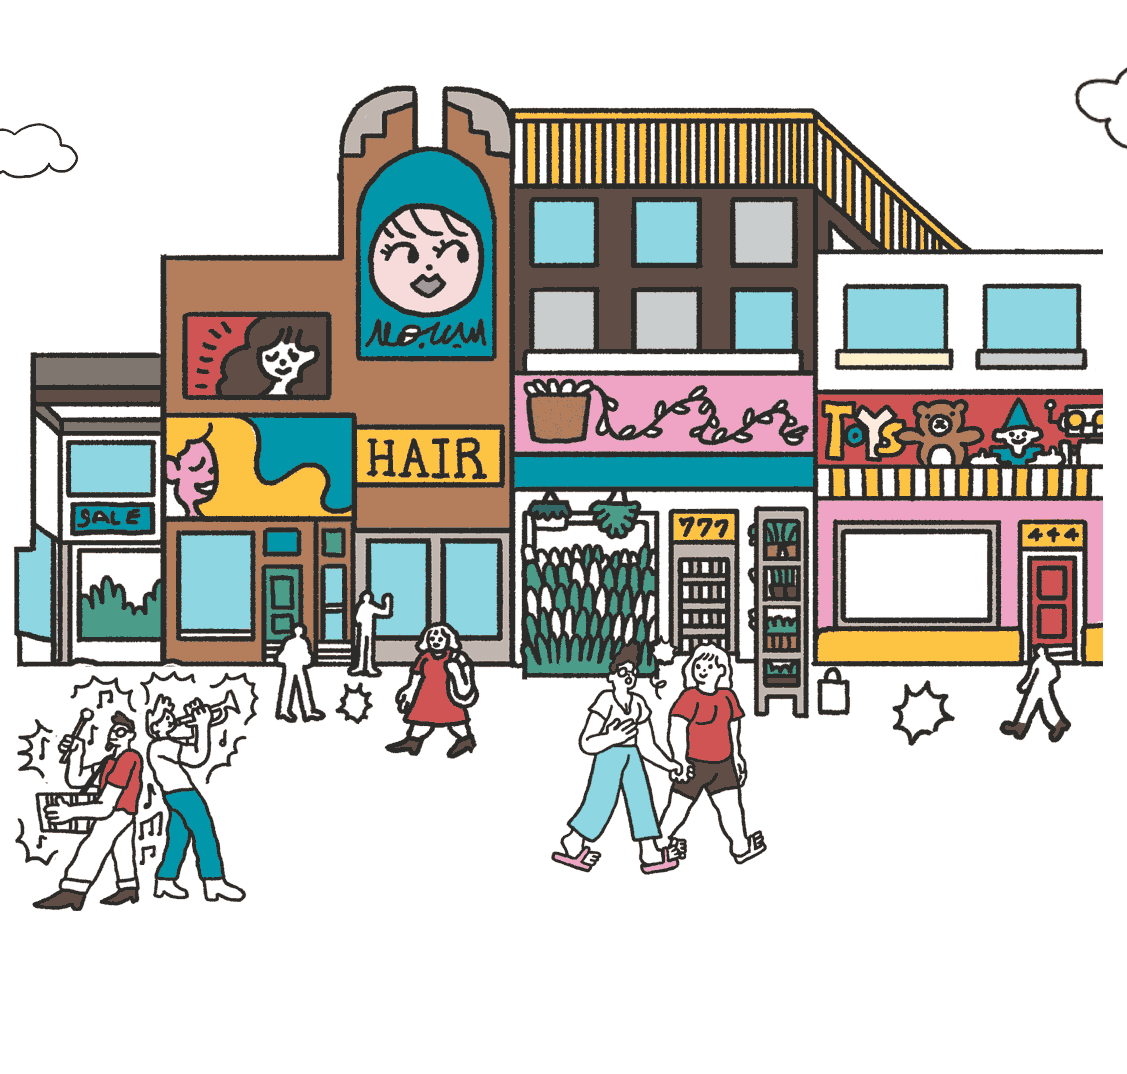 Cartoonized artwork of Bloor West Village